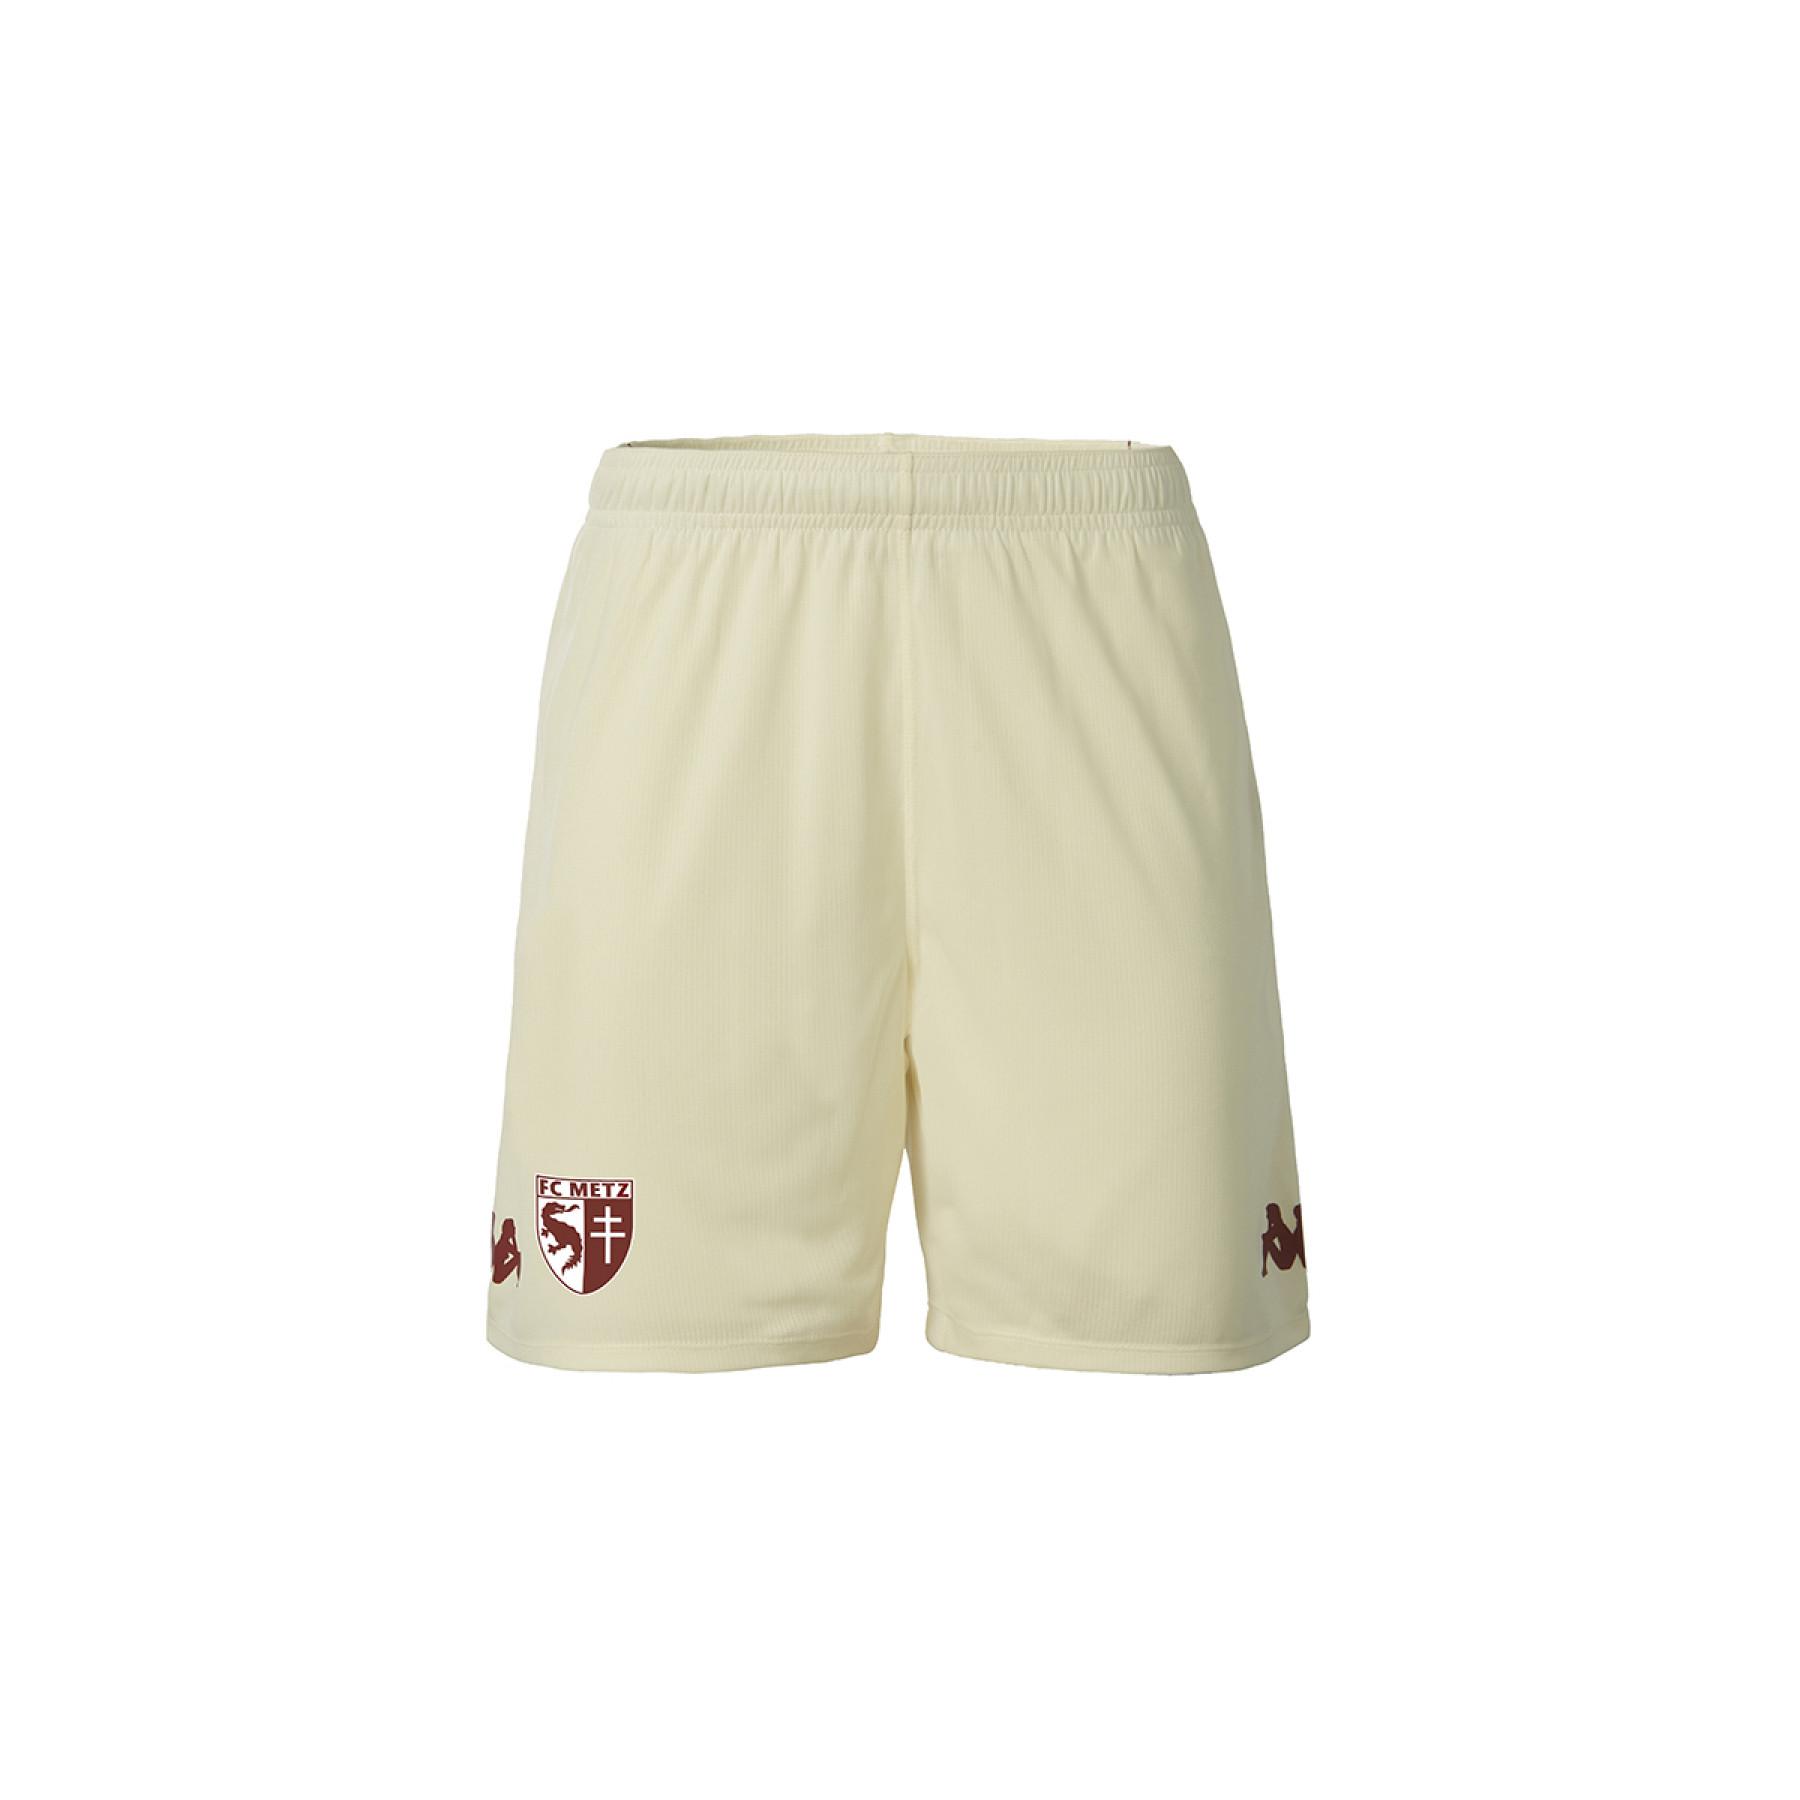 Outdoor shorts FC Metz 2020/21